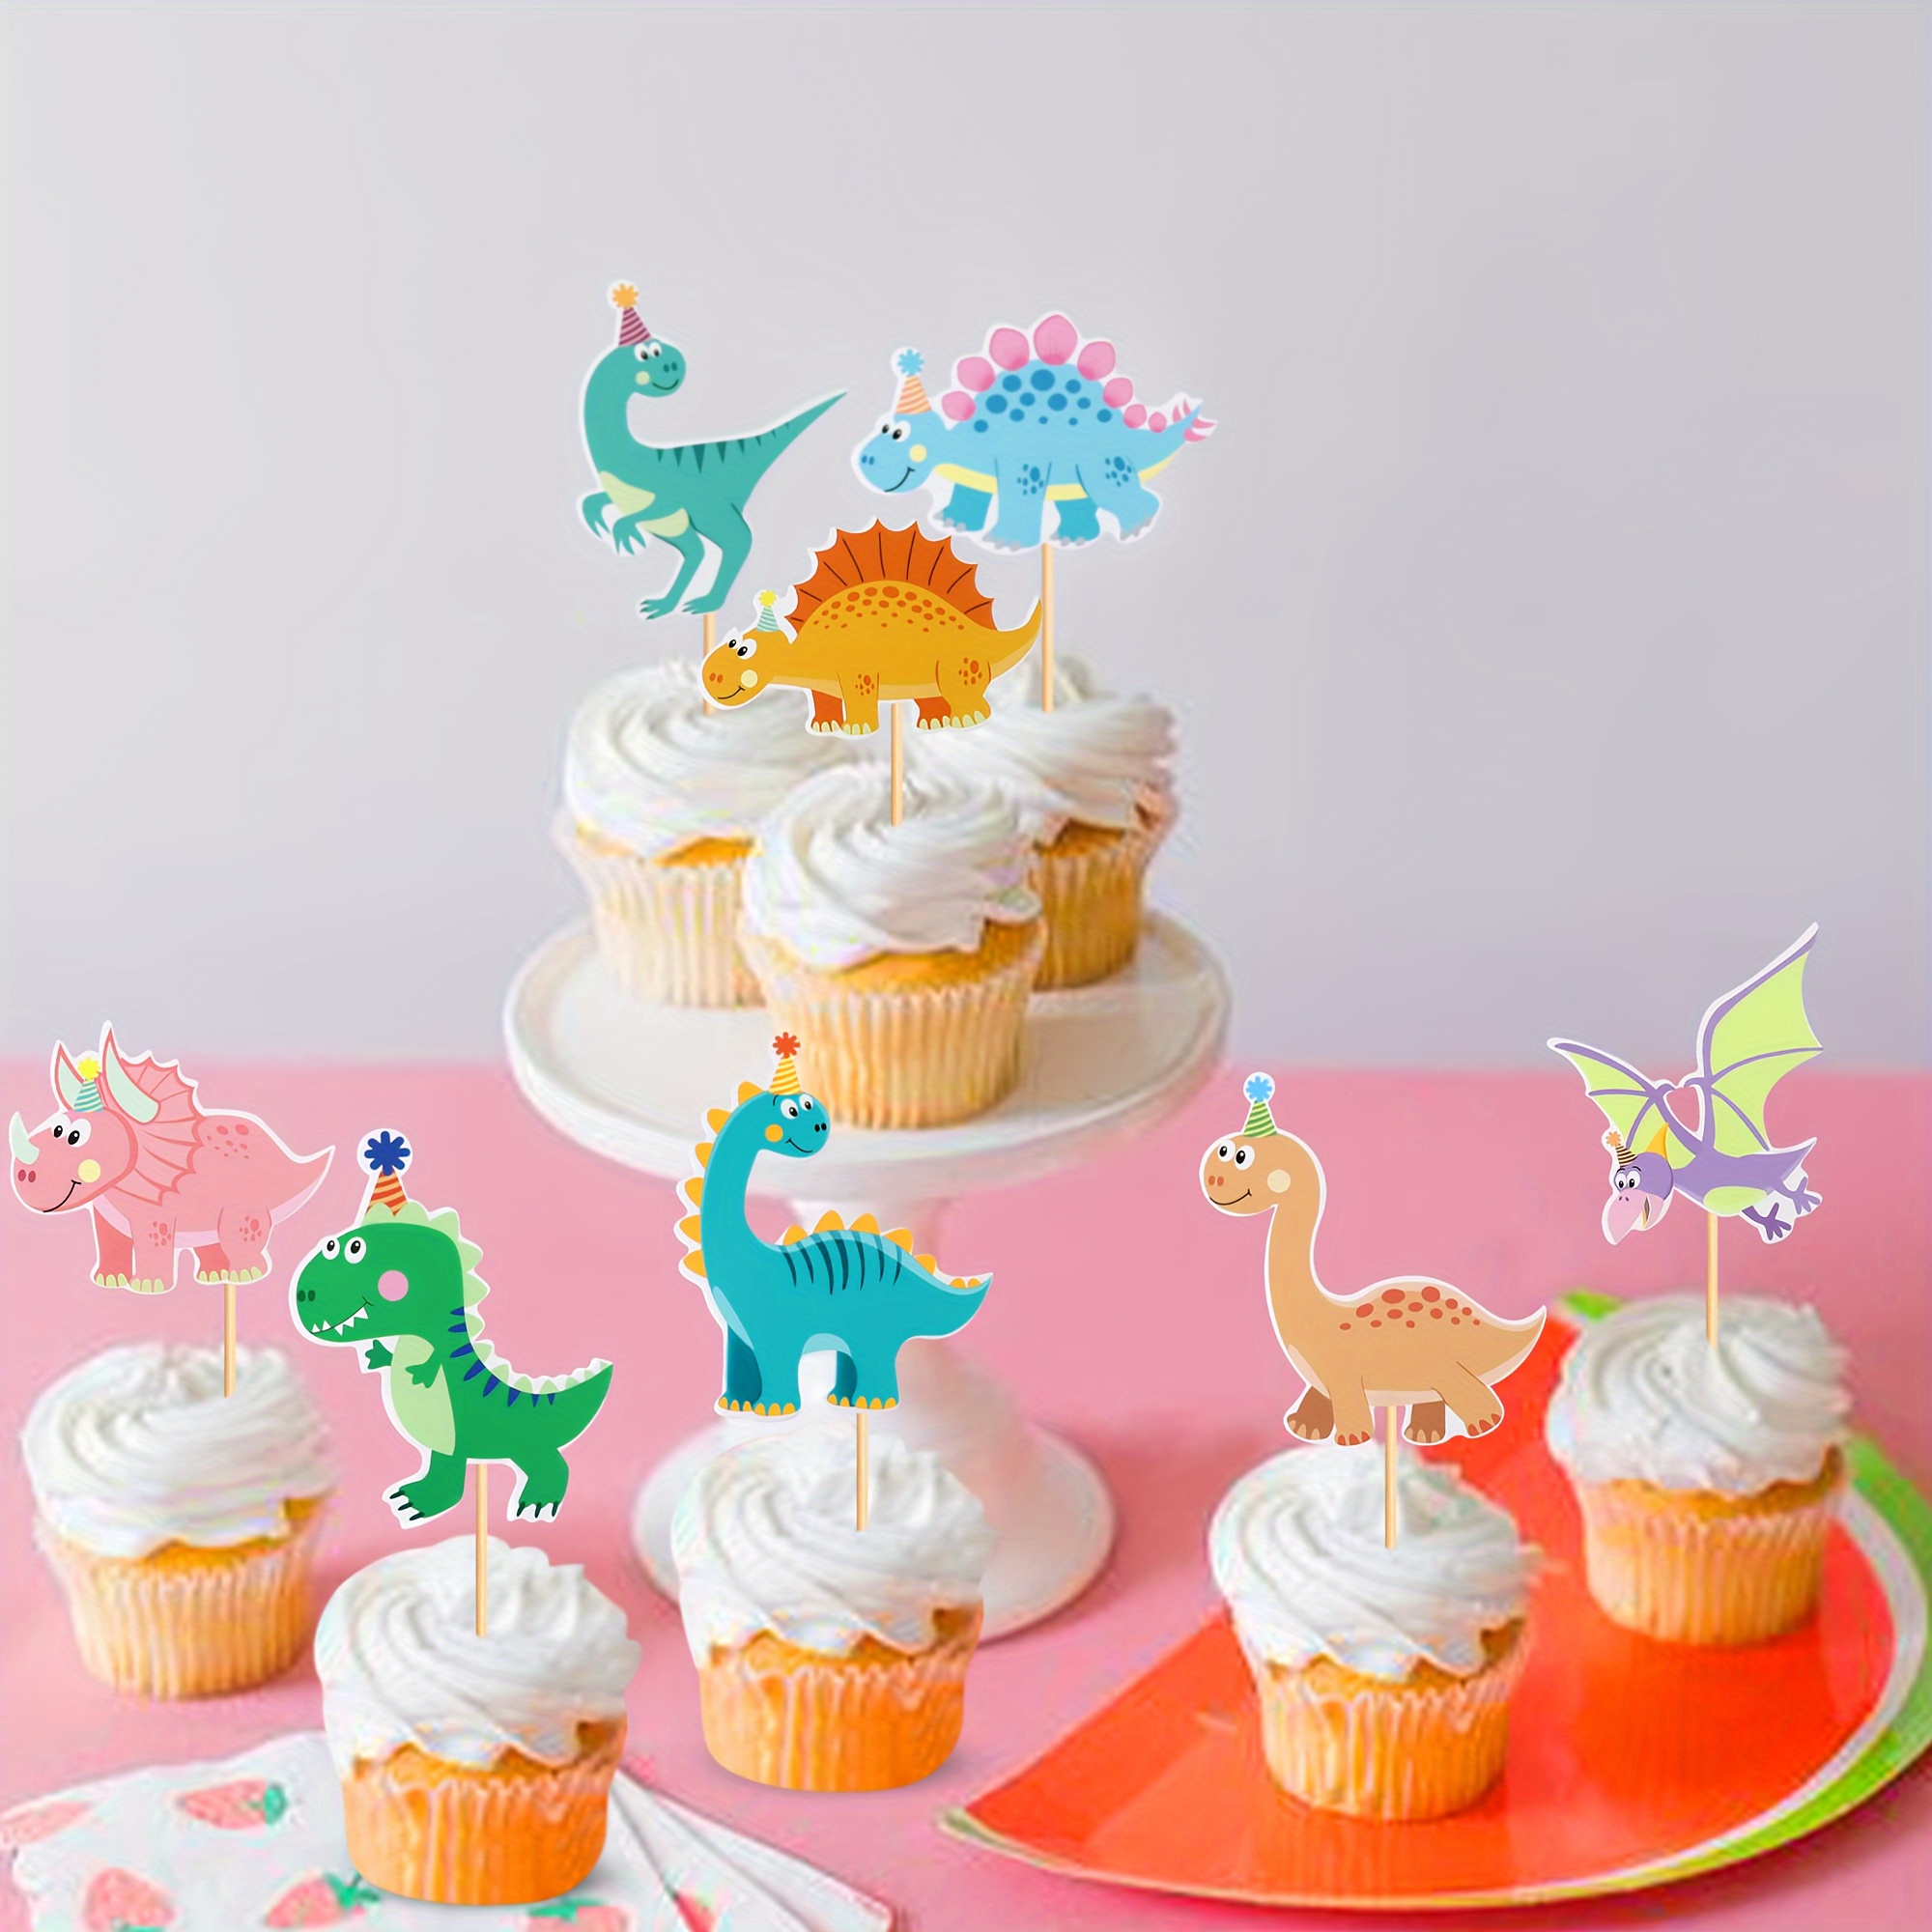  Lilo and Stitch - Decoraciones para fiestas, adornos para  cupcakes, decoración de cumpleaños, decoración de fiesta de cumpleaños para  niños y niñas, decoración de postres